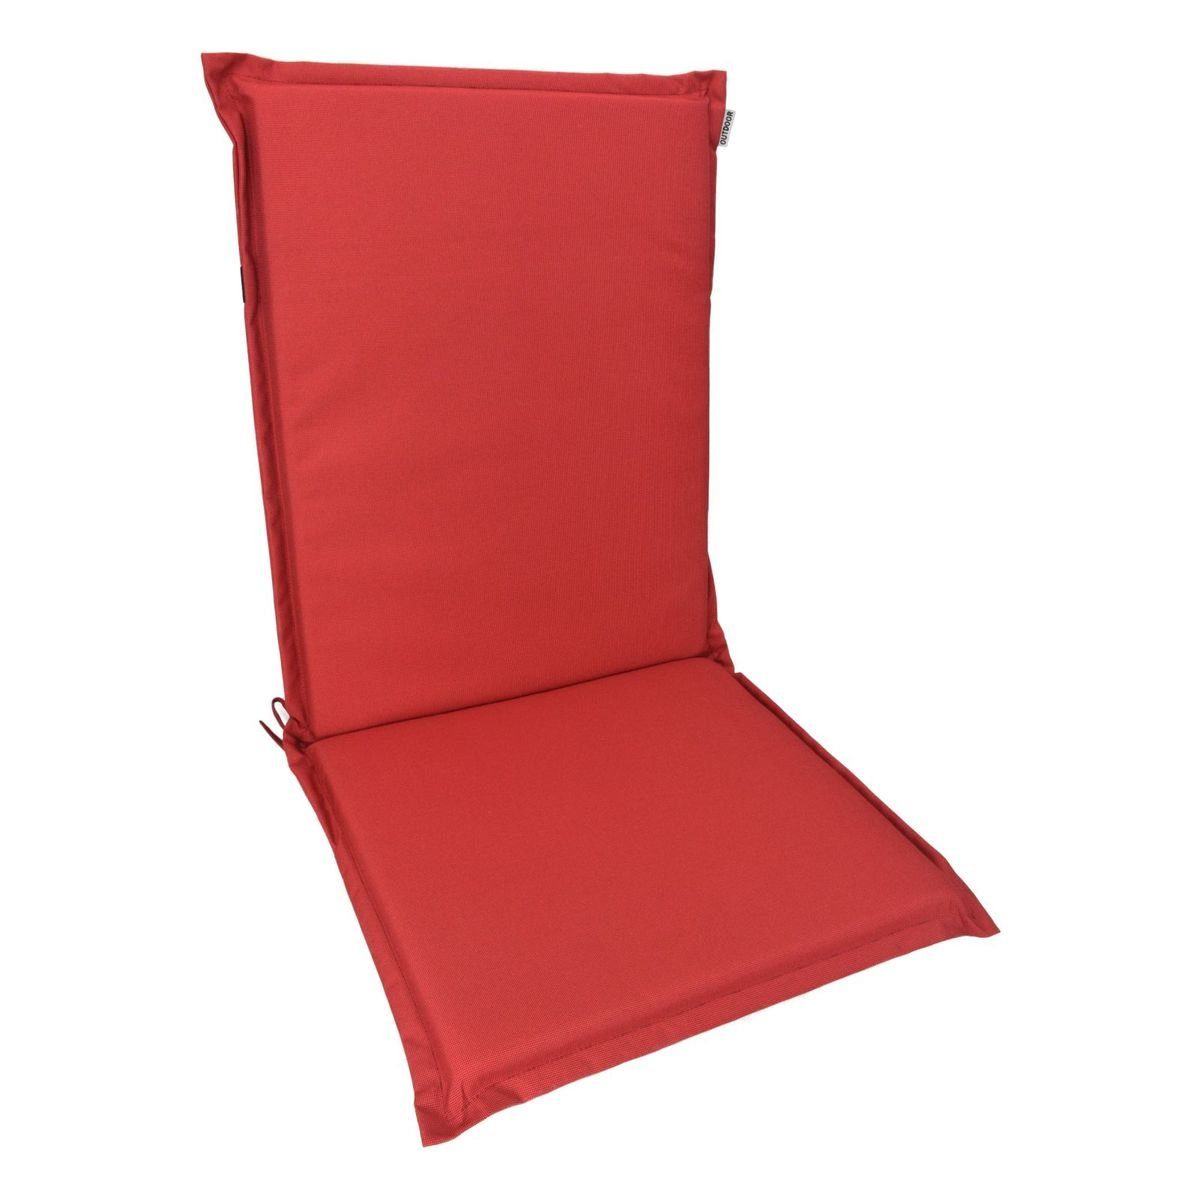 Marabellas Stuhlkissen 50x110x3cm Polsterauflage Shop Kissen Stuhlauflage Sitzkissen Sitzauflage Rot